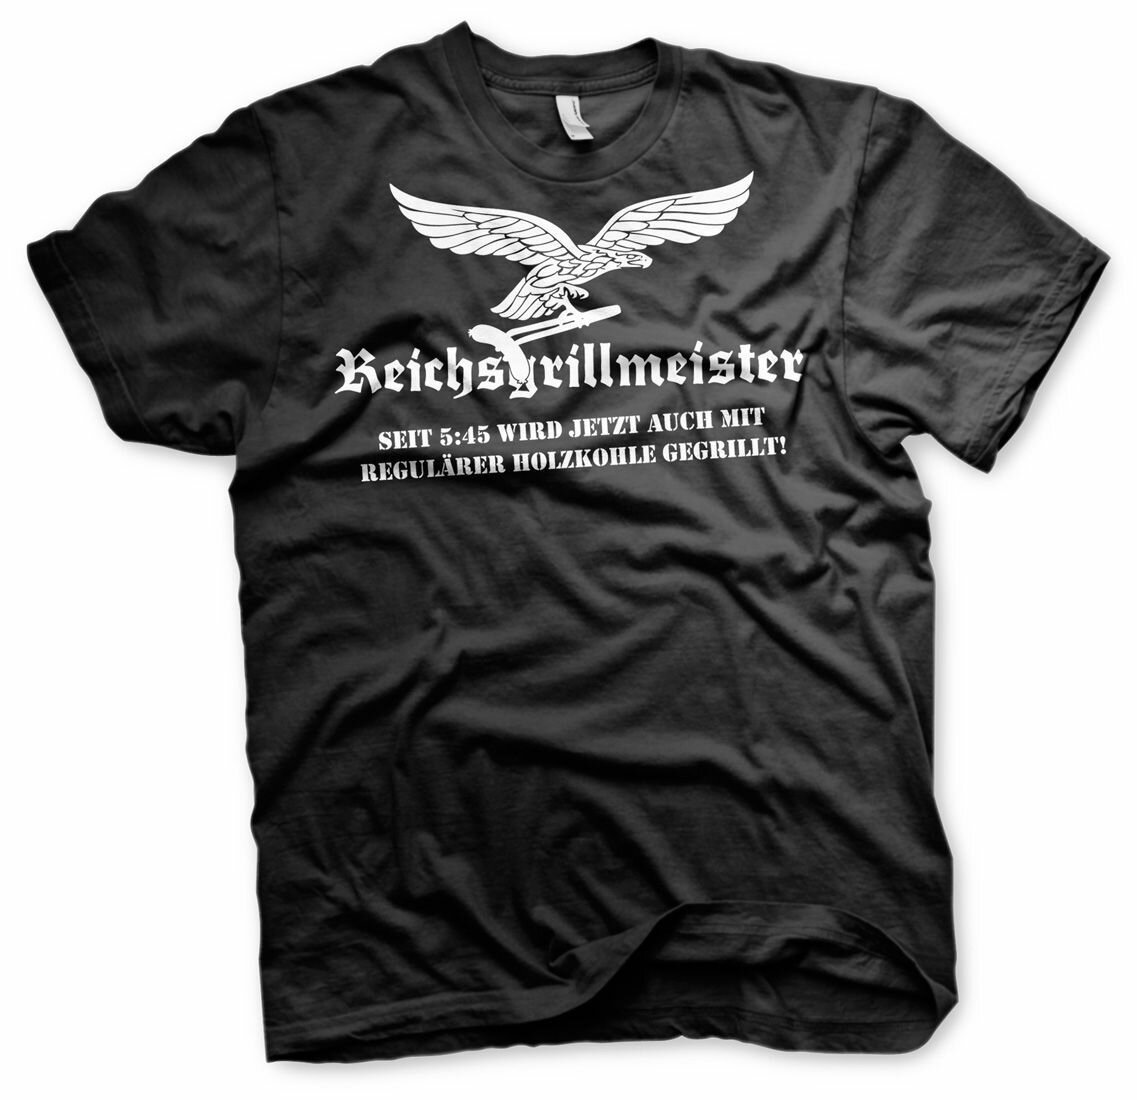 Reichsgrillmeister 2 -Tshirt Barbeque Schürze Kugelgrill Grillshirt G,  16,90 €